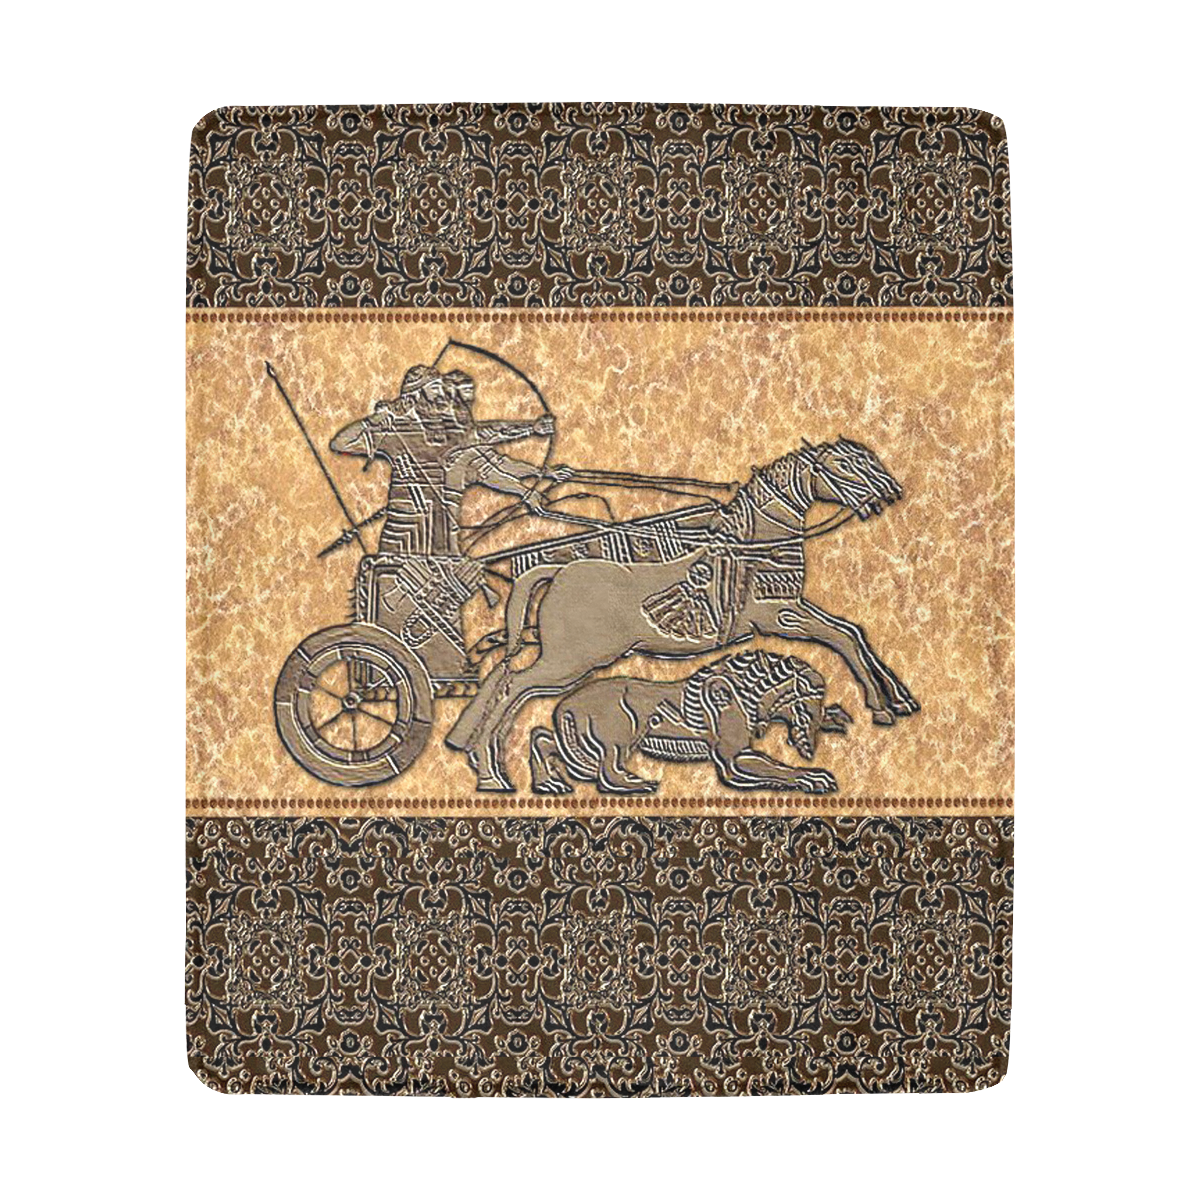 Assyrian Warriors Ultra-Soft Micro Fleece Blanket 50"x60"